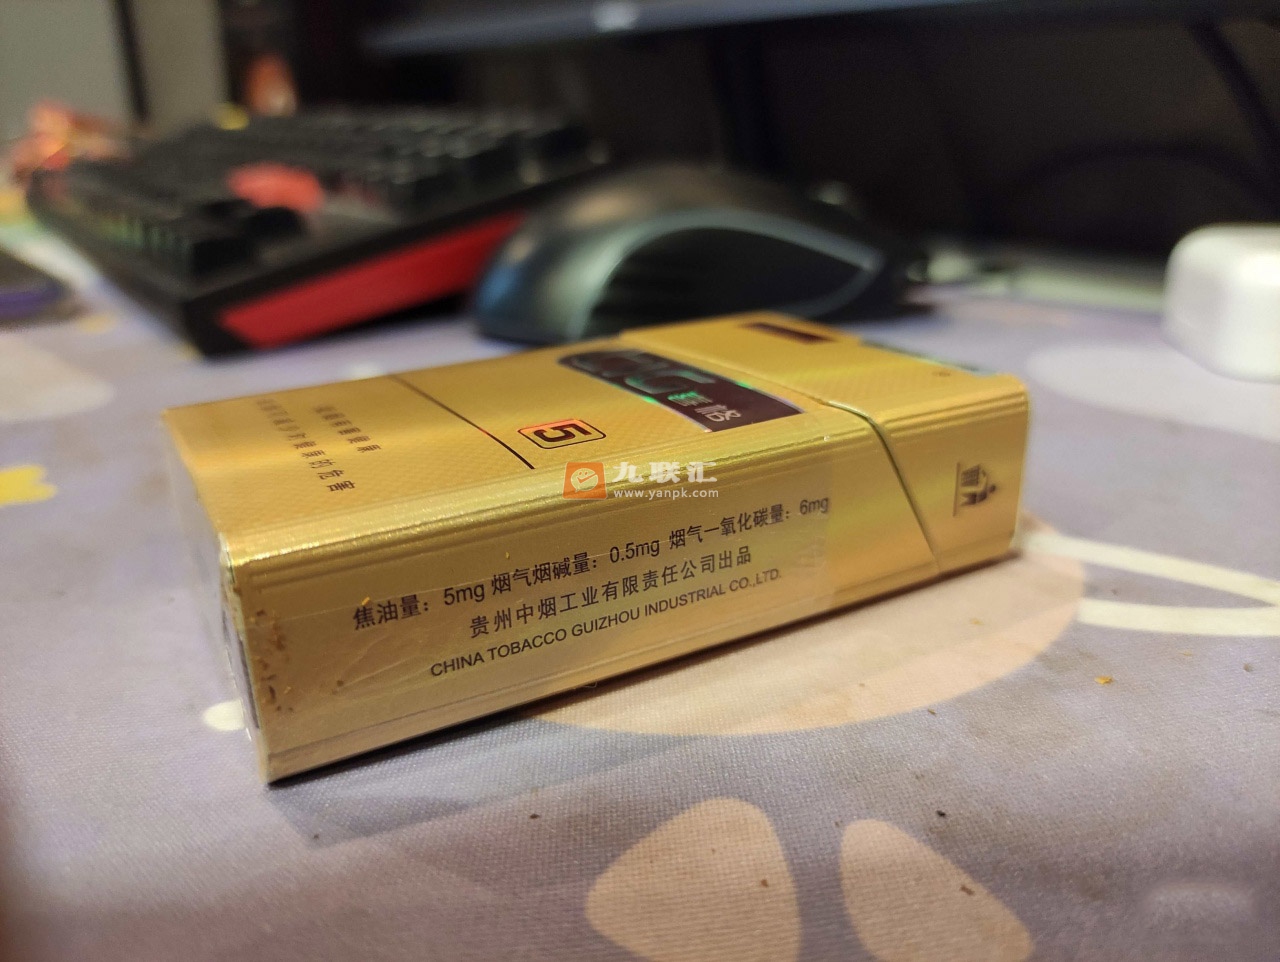 这款烟的外包装采用了金黄色调,但却不是那种抢眼的亮金色,而是更加